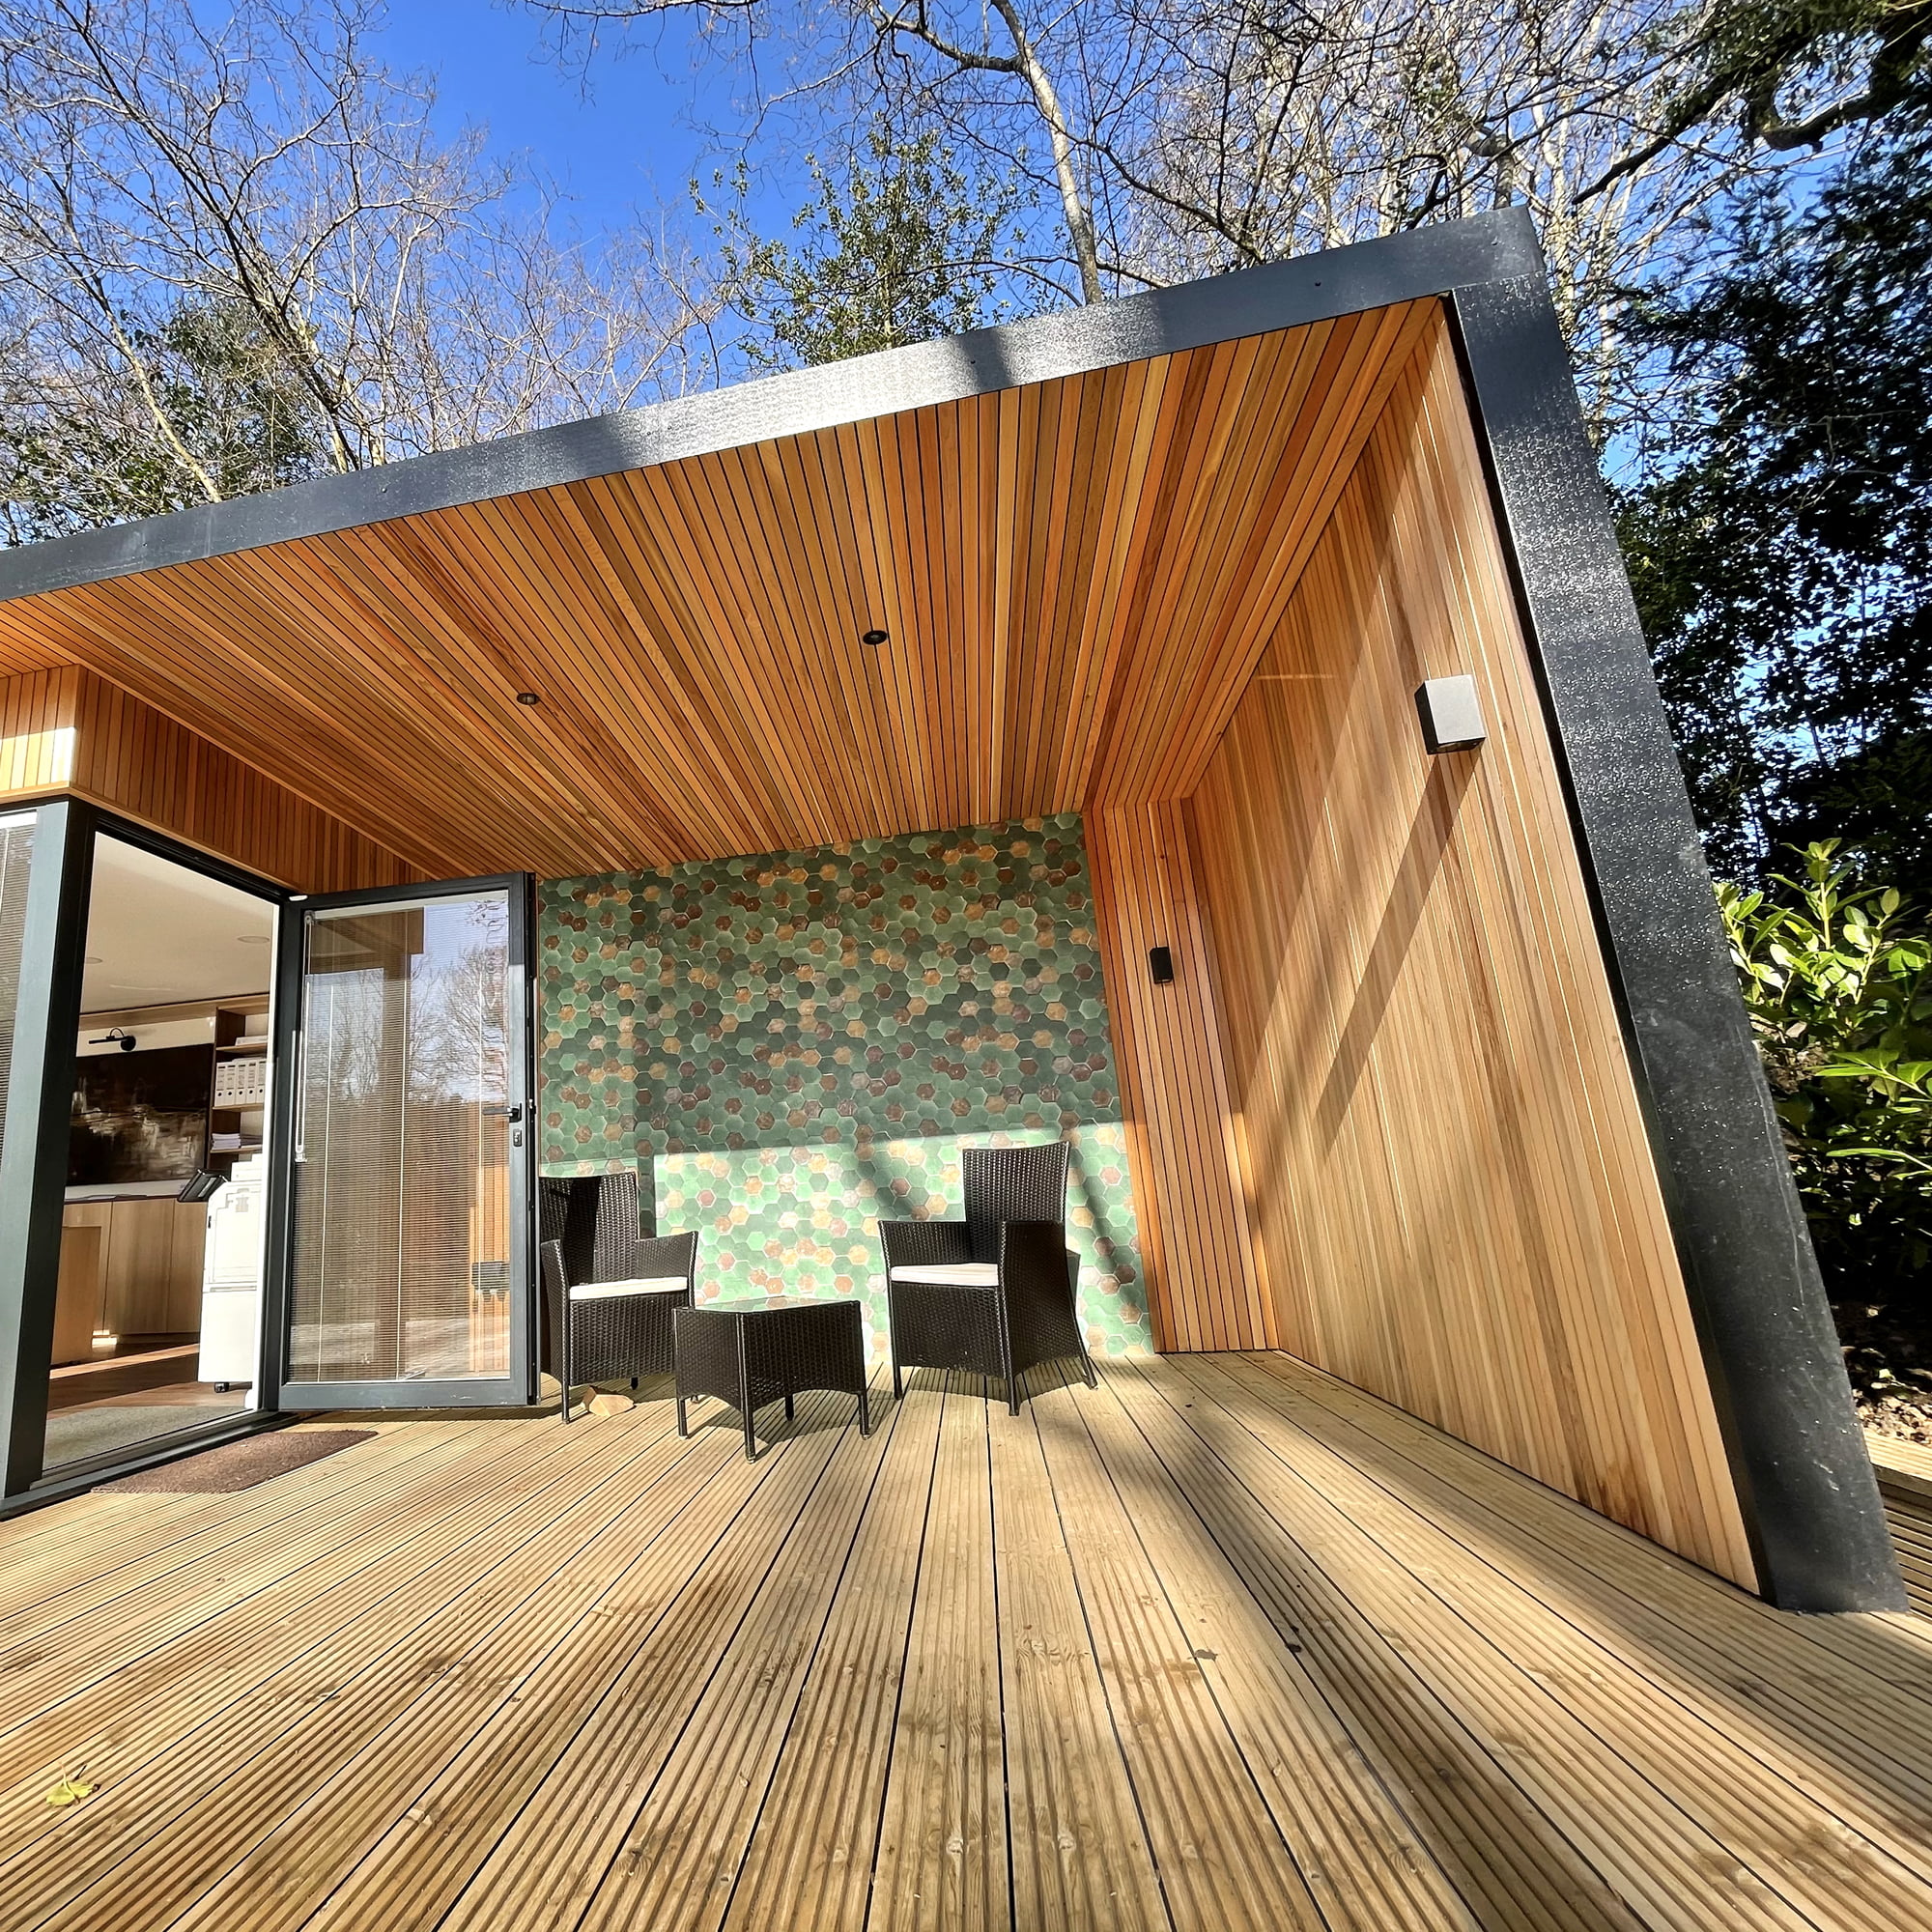 External outdoor wallpaper and roof overhang for unique designer garden office